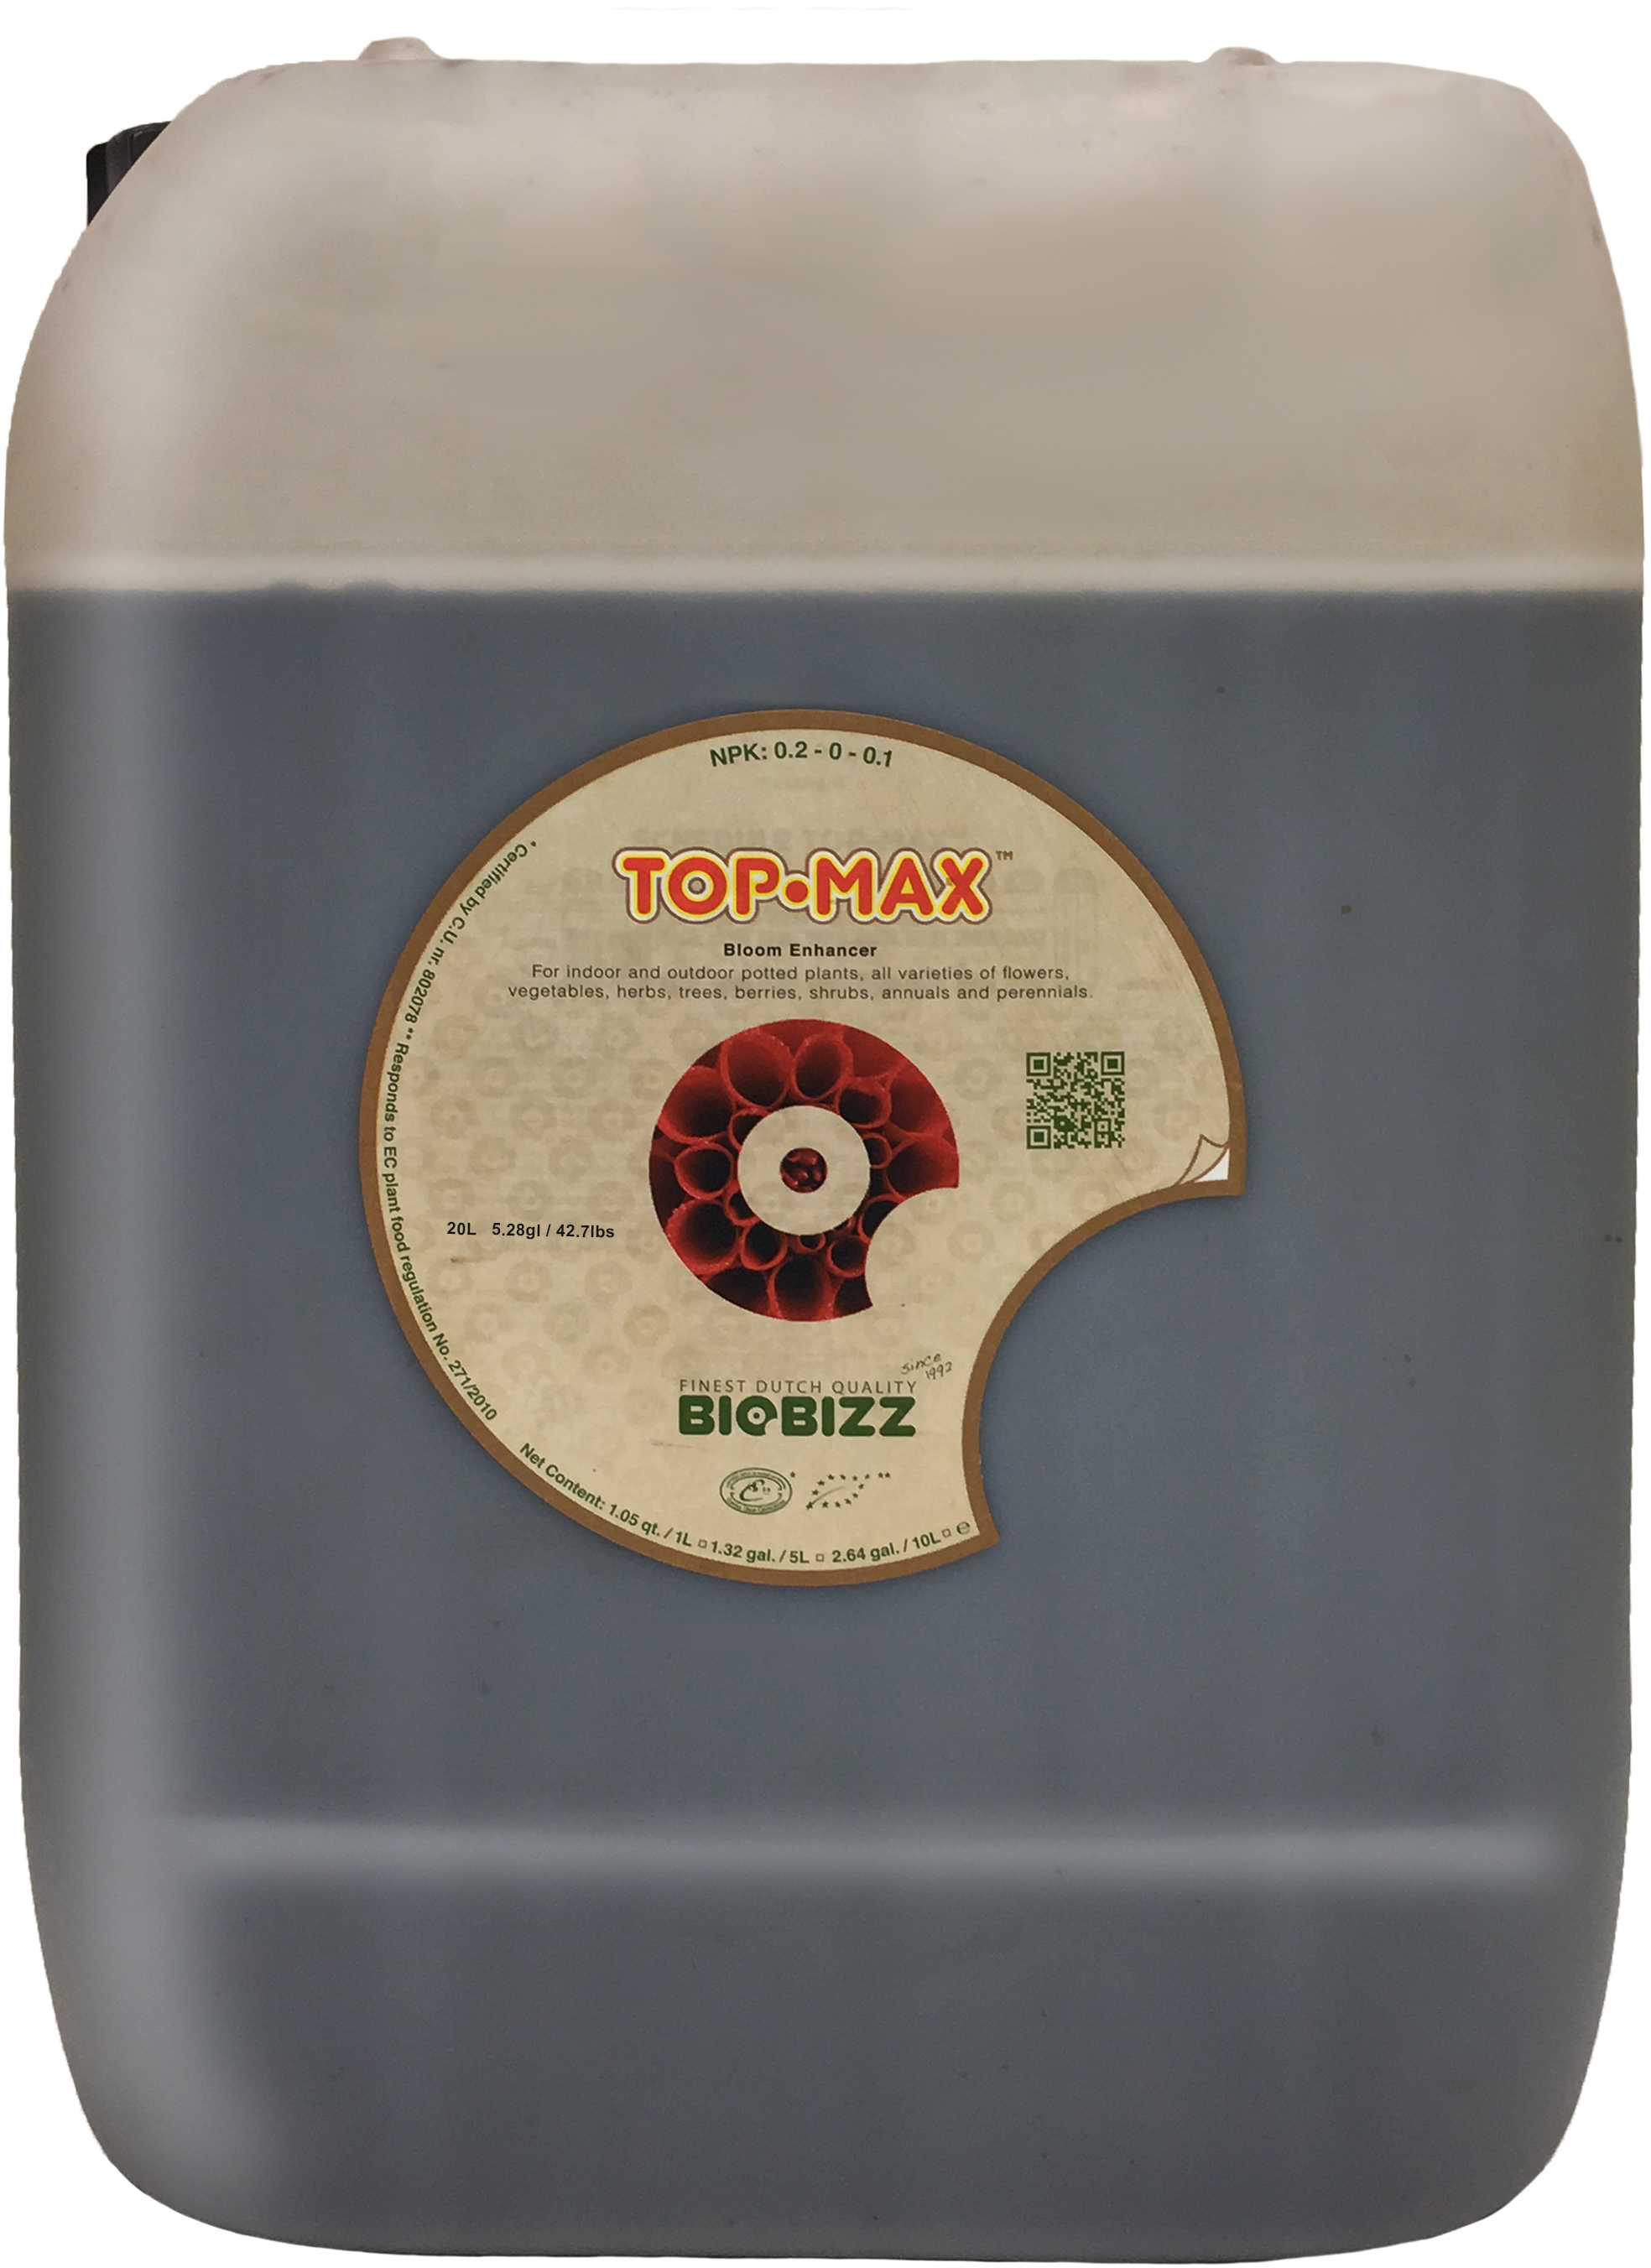 Picture for Biobizz Top-Max, 20 L